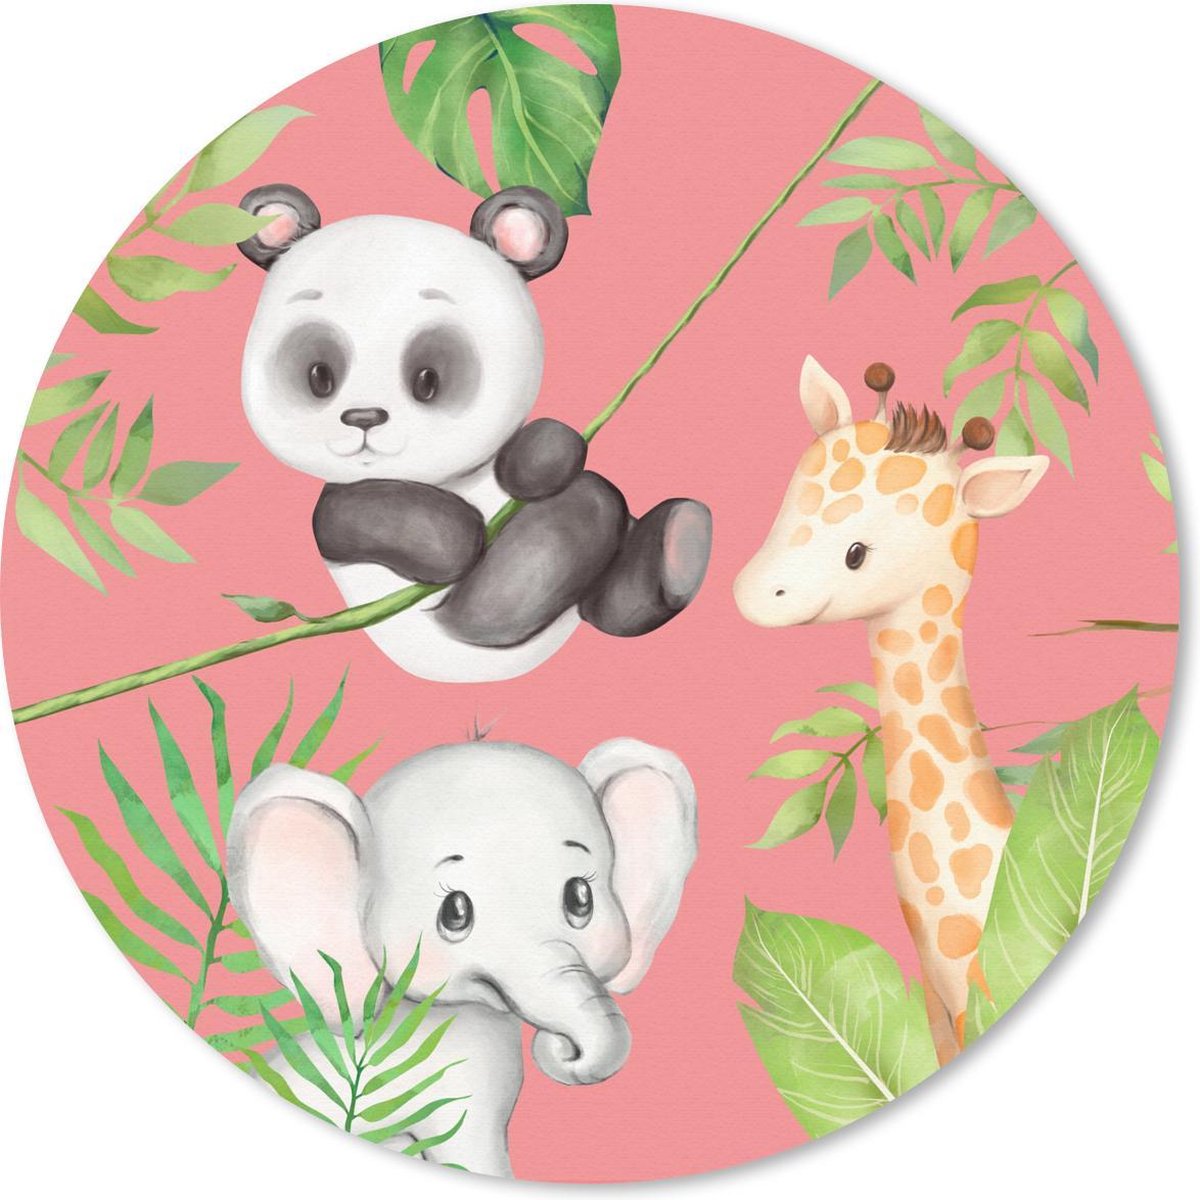 Muismat - Mousepad - Rond - Jungledieren - Kind - Roze - 50x50 cm - Ronde muismat